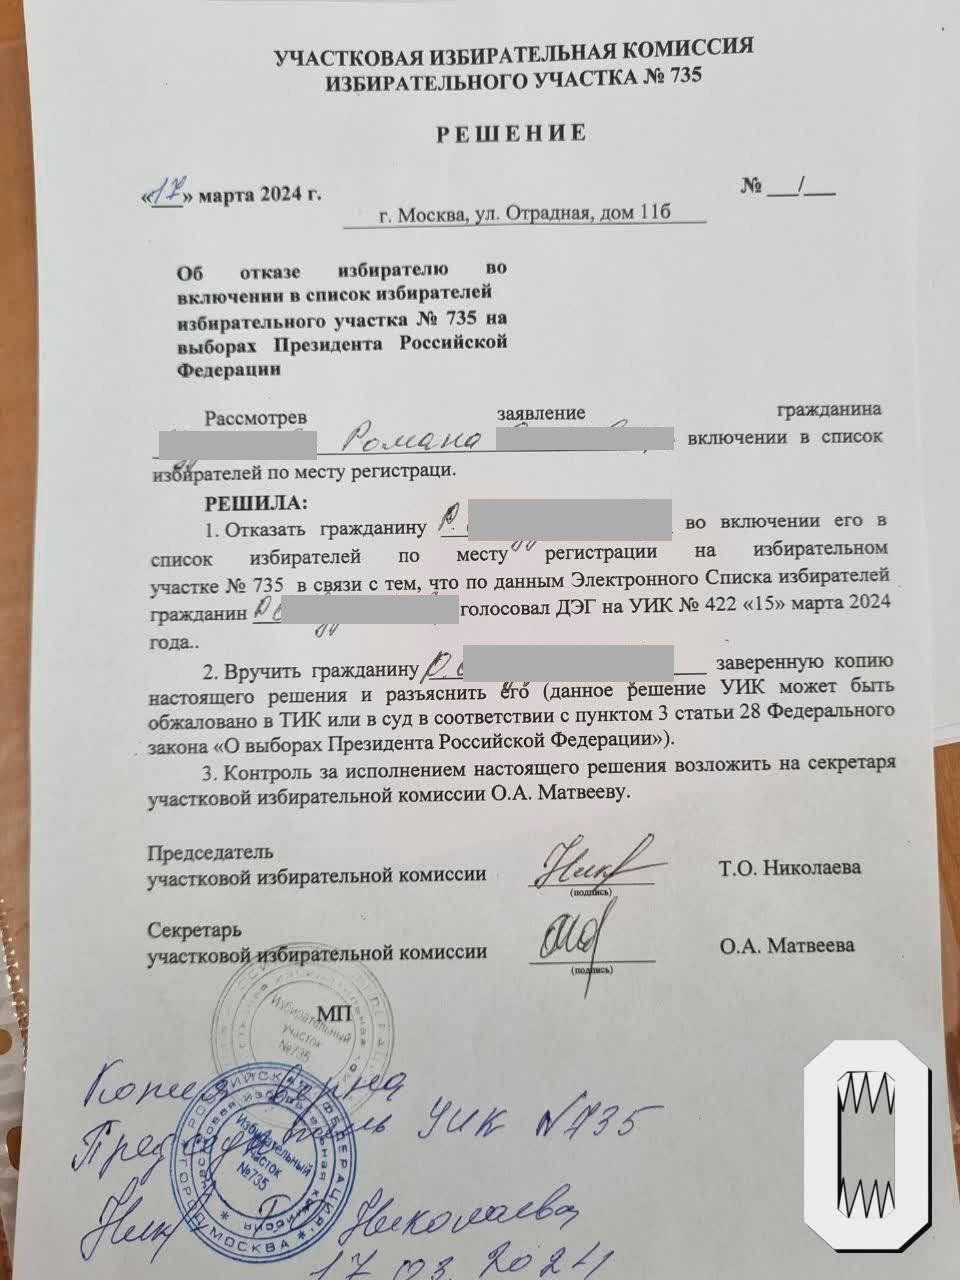 Москвич написал жалобу, что ему отказали в участии в голосовании на участке